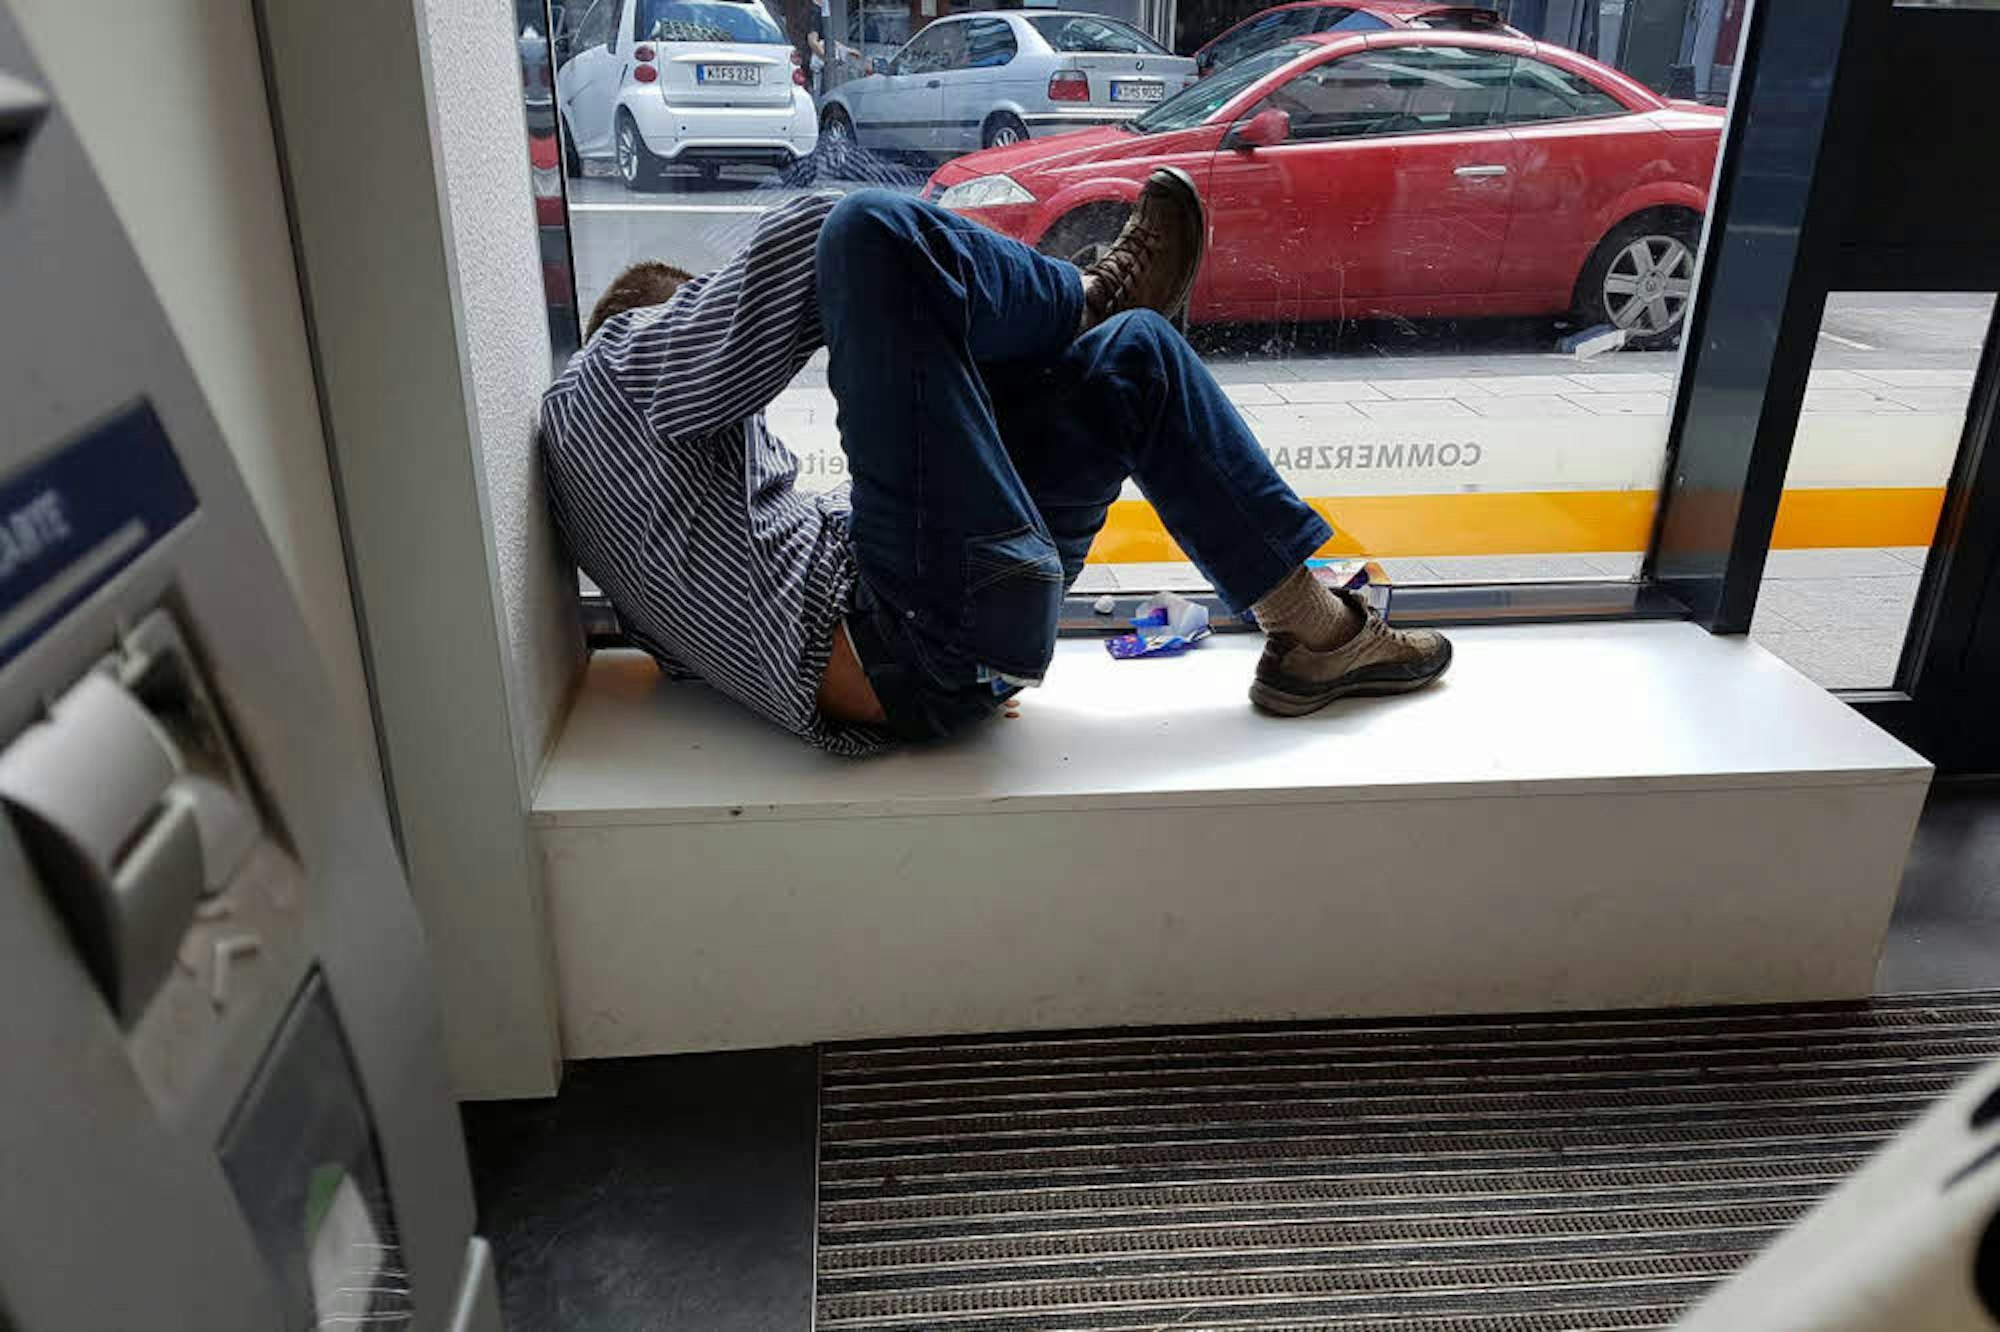  Der Rausch wird von einigen Obdachlosen im Au­to­ma­ten­raum einer Bank ausgeschlafen.